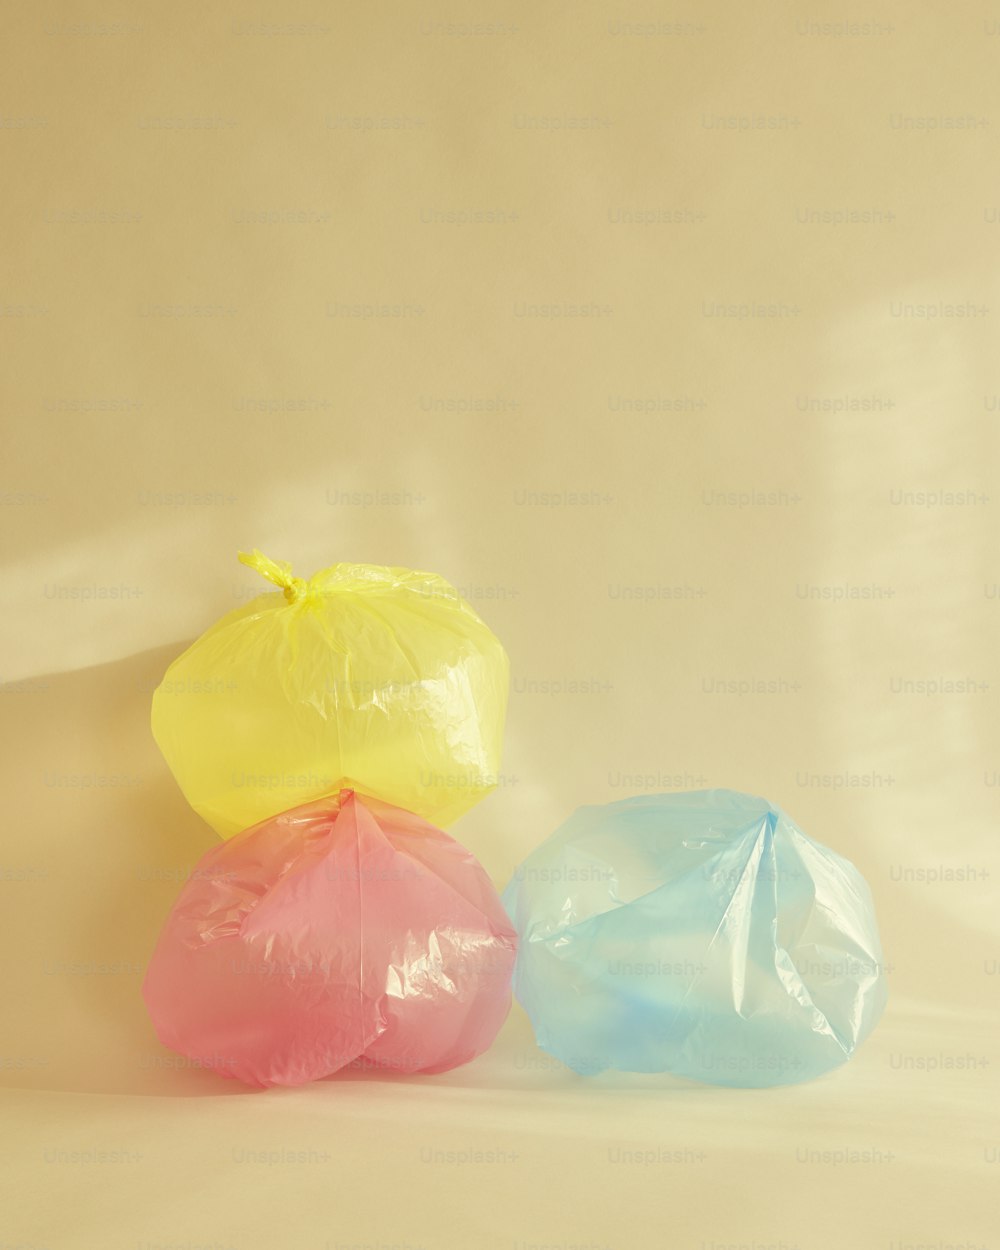 três sacos plásticos de cores diferentes em um fundo bege